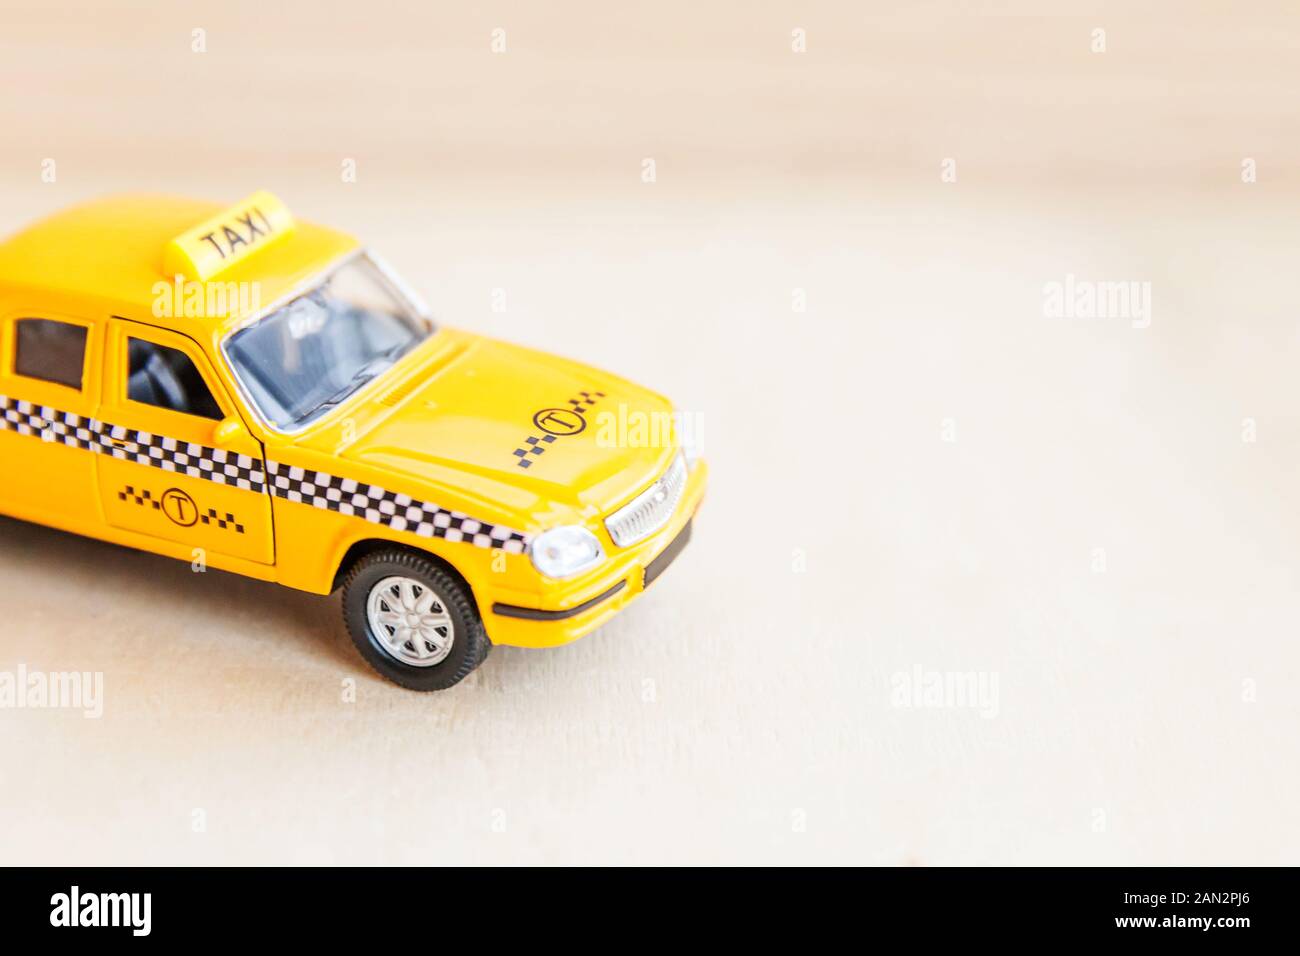 Design vintage retro simplement jaune jouet voiture Taxi Cab modèle sur  fond de bois. Transport Automobile et symbole. Le trafic urbain de la ville  de livraison service idée concept. Copy space Photo